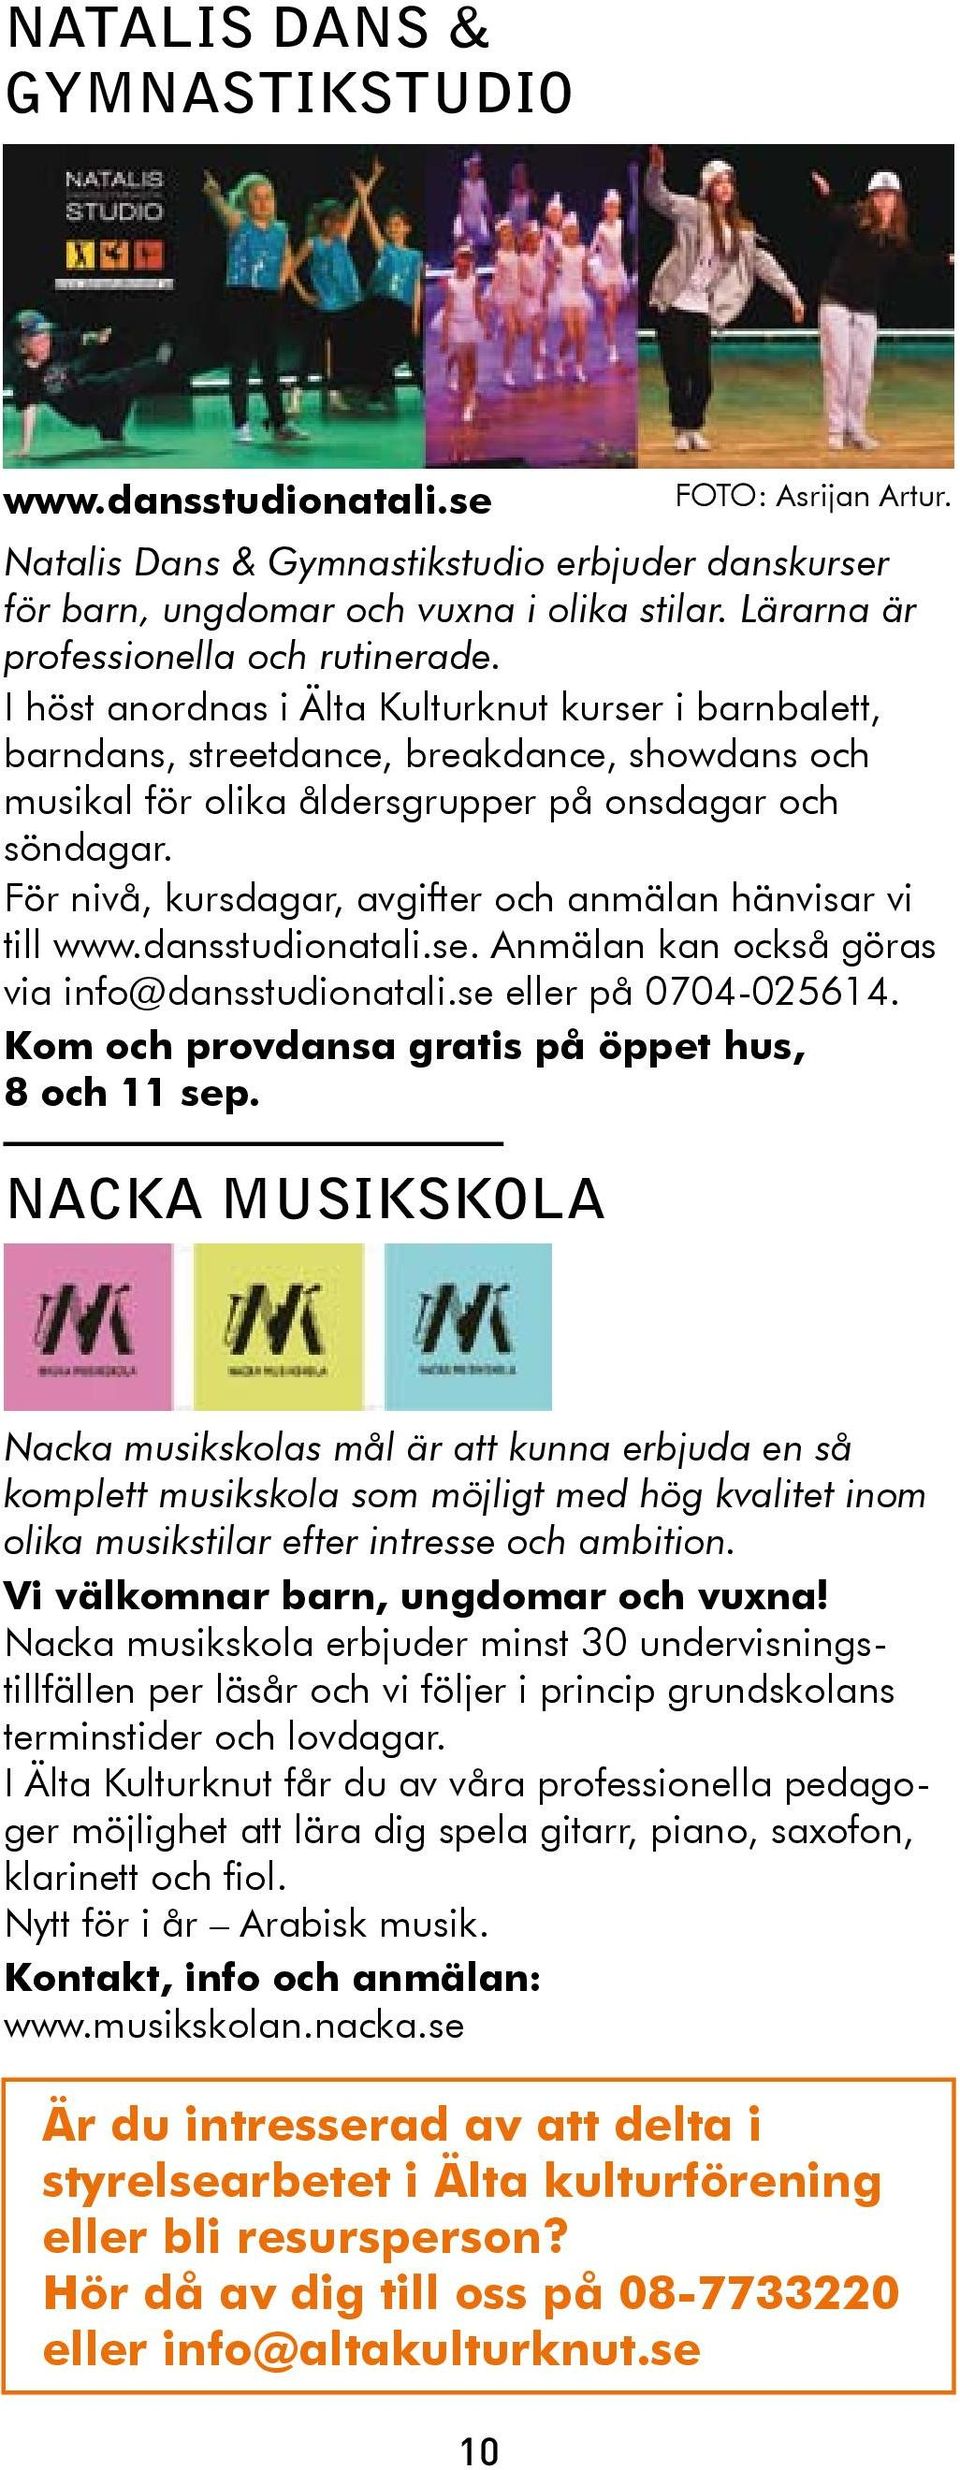 För nivå, kursdagar, avgifter och anmälan hänvisar vi till www.dansstudionatali.se. Anmälan kan också göras via info@dansstudionatali.se eller på 0704-025614.